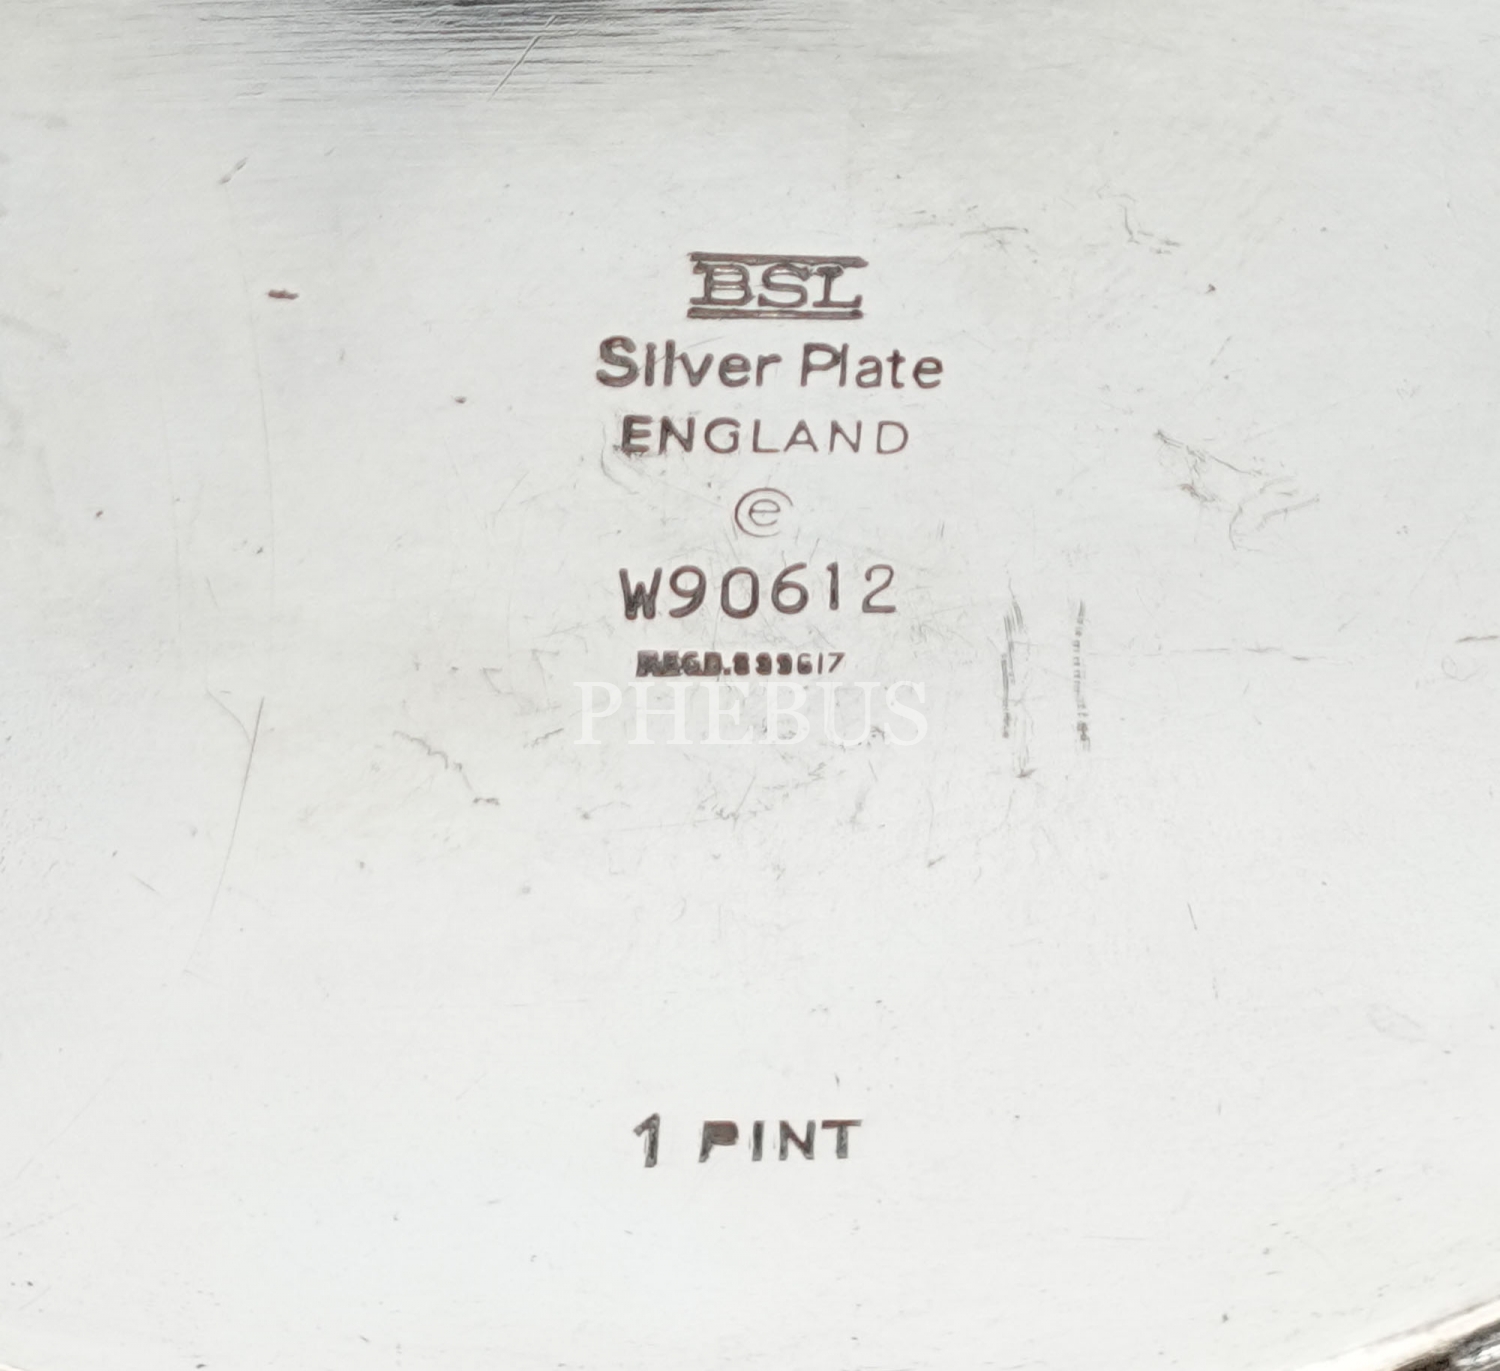 İngiliz malı BSL Silver Plate damgalı gümüş kaplama sütlük takımı, 17x13x8 cm, 11x8x6cm, 12x7x7cm...